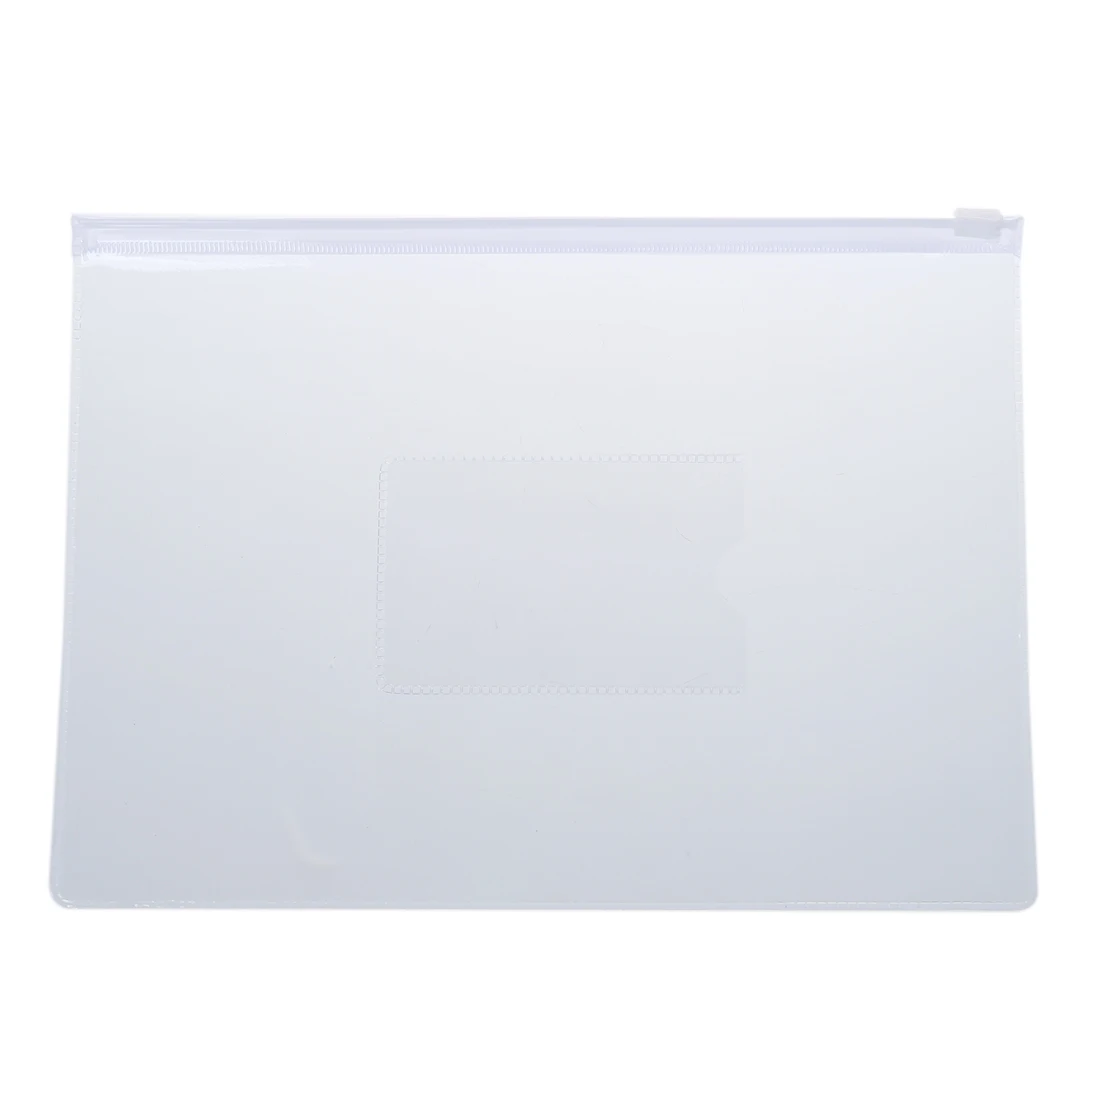 Белые Прозрачные Бумажные папки Формата А5 с застежкой-молнией, пакеты для файлов, 20 шт - 0